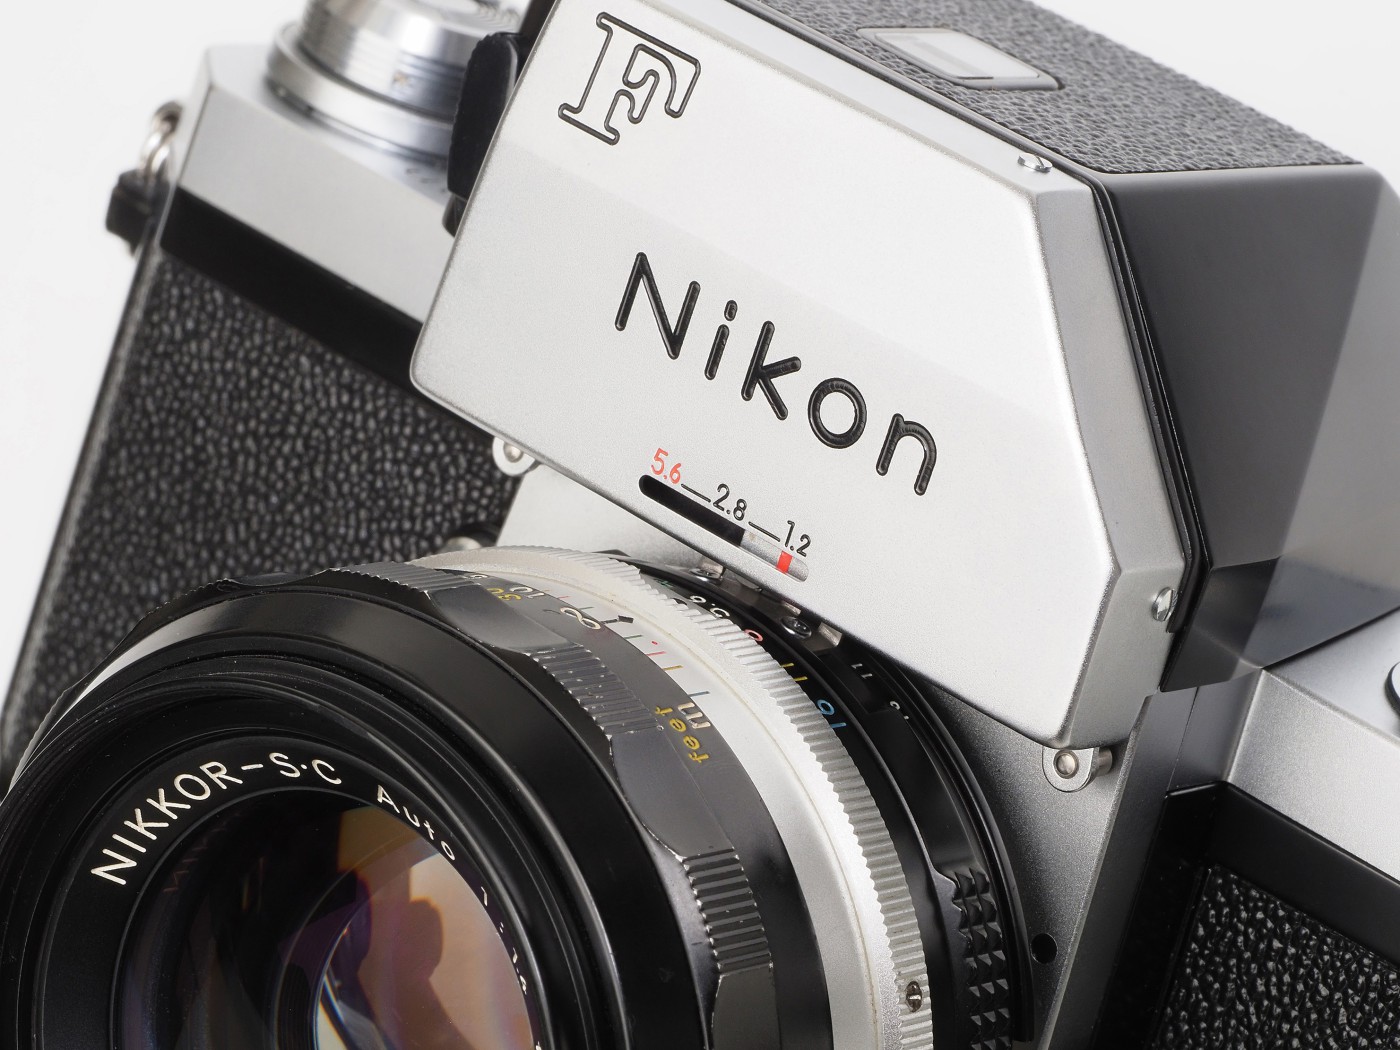 Nikon ニコンF フォトミック FTN ブラック